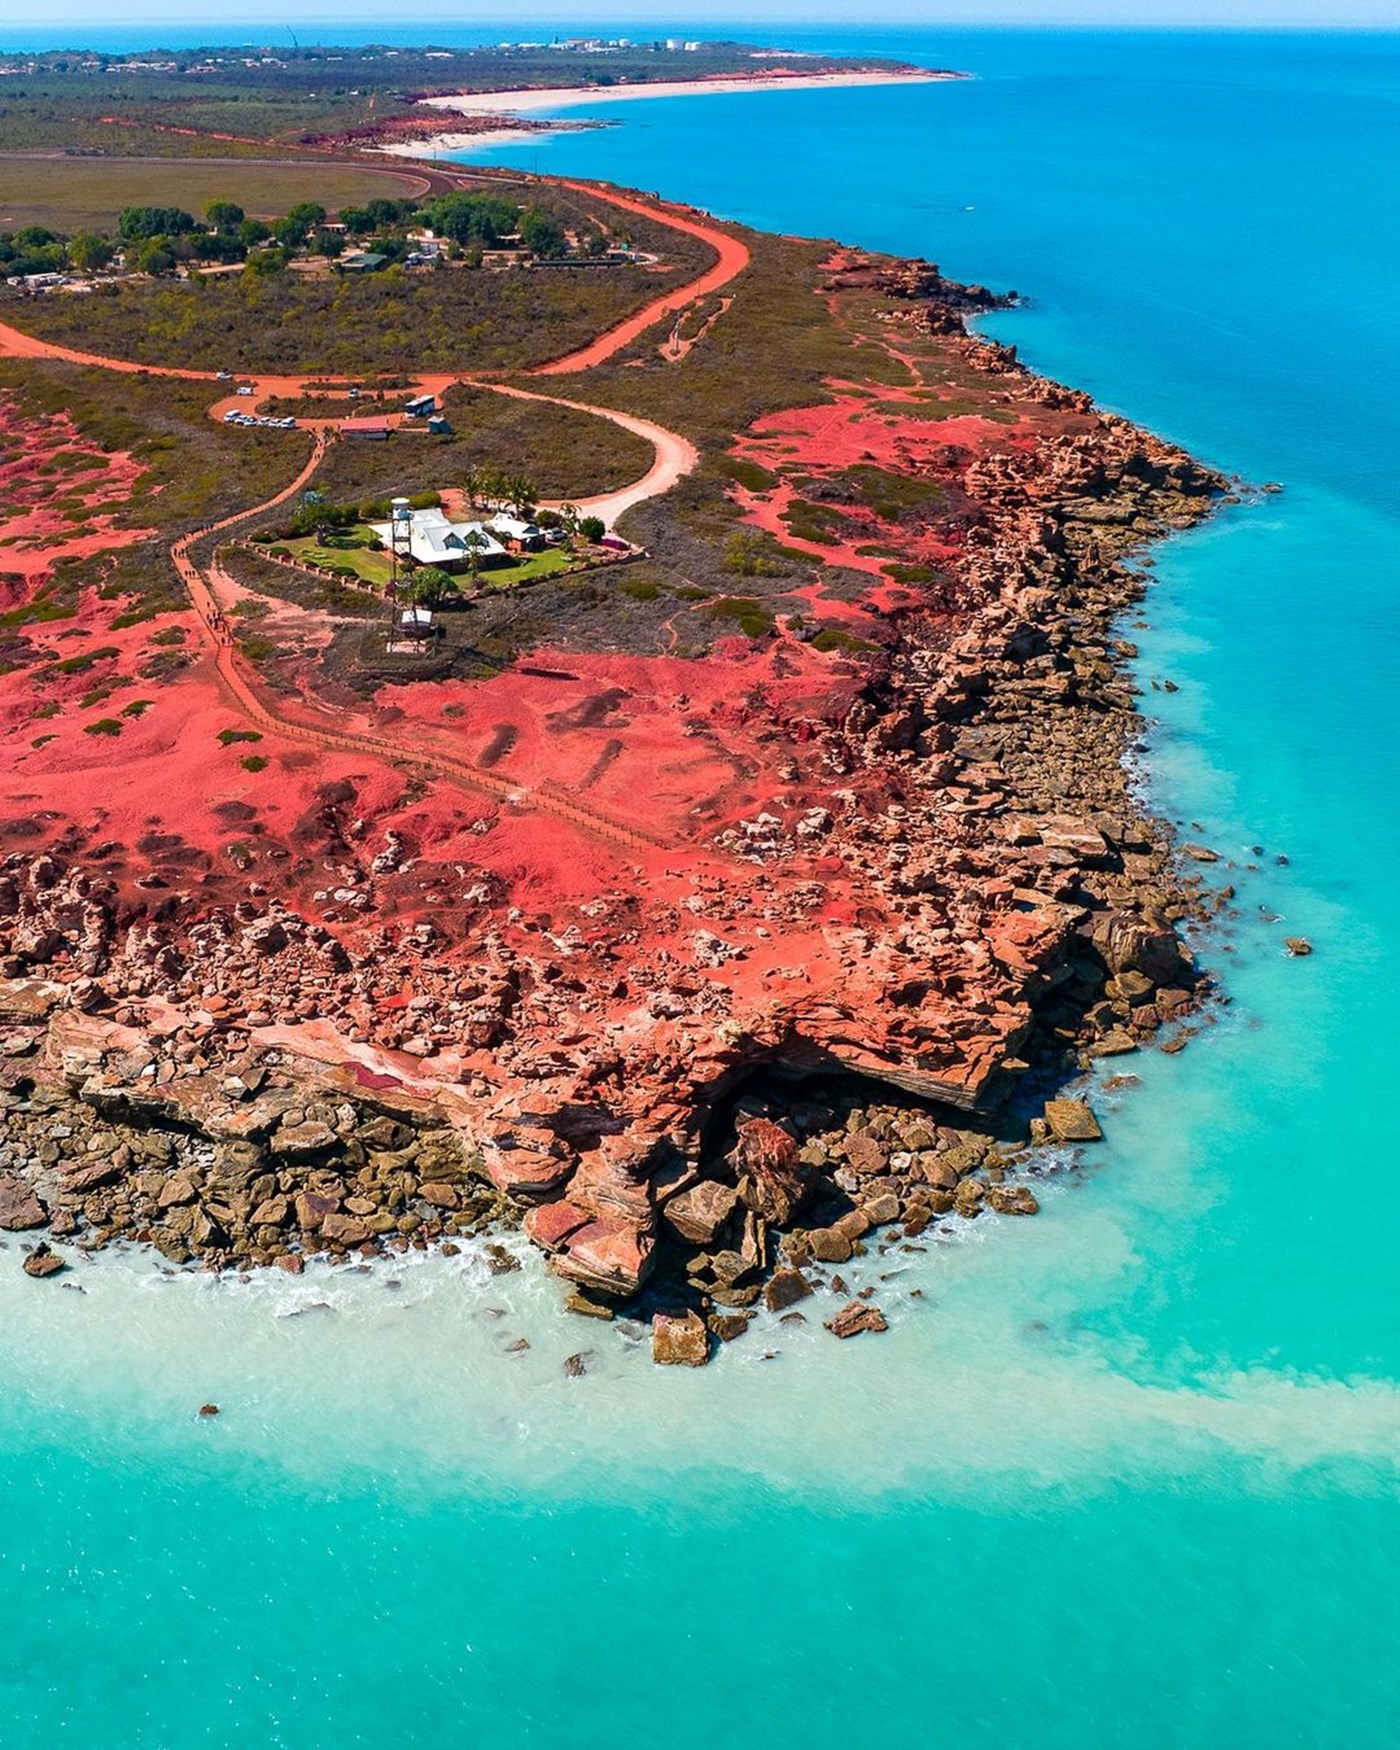 Gantheaume Point. Image credit: Western Australia